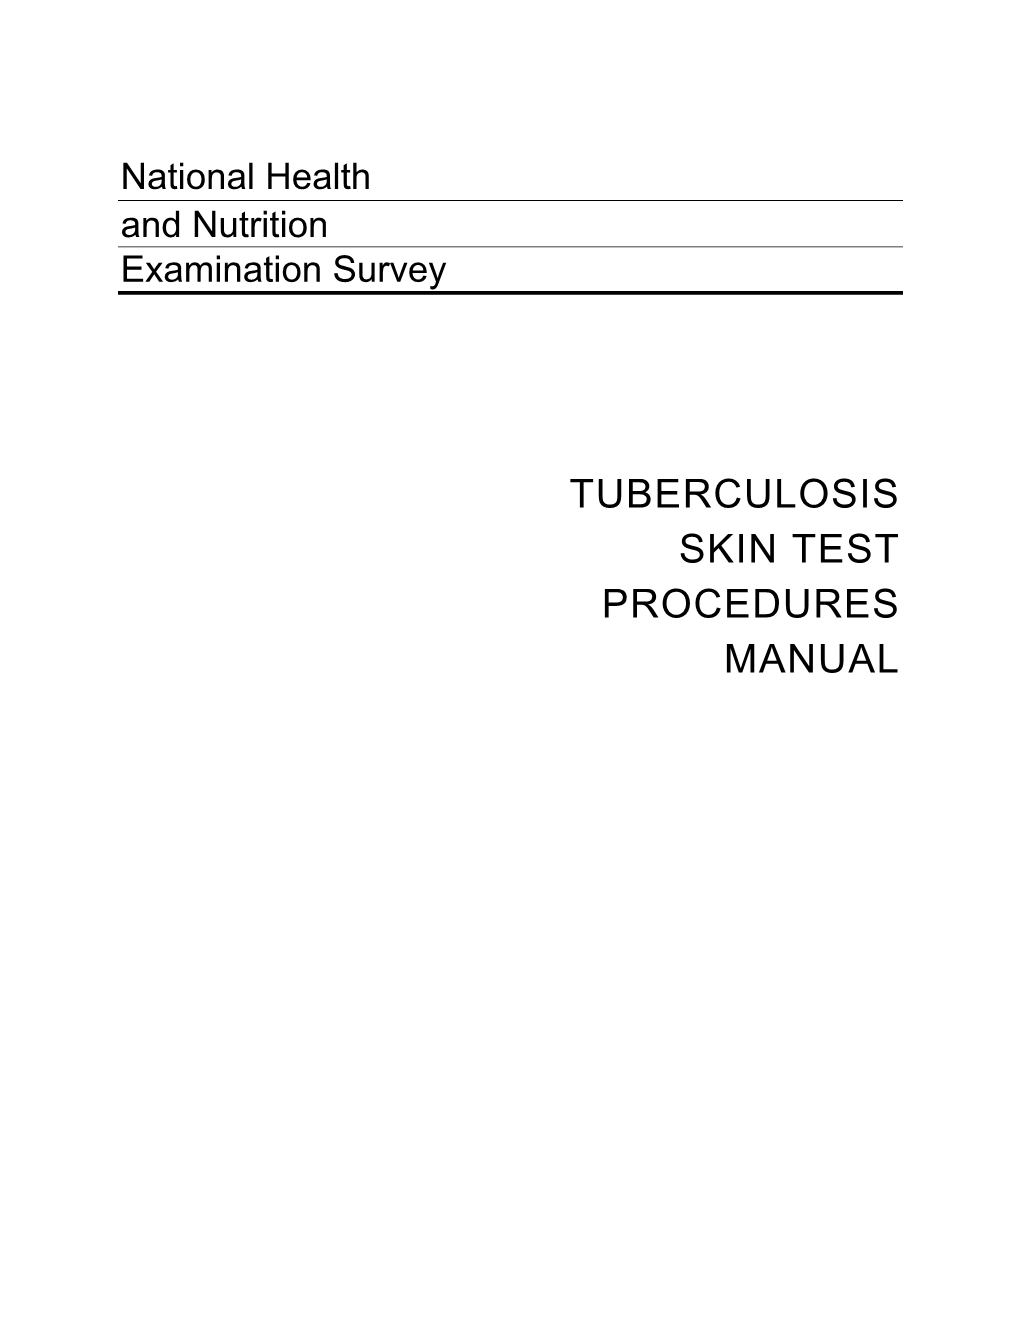 Tuberculosis Skin Test Procedures Manual